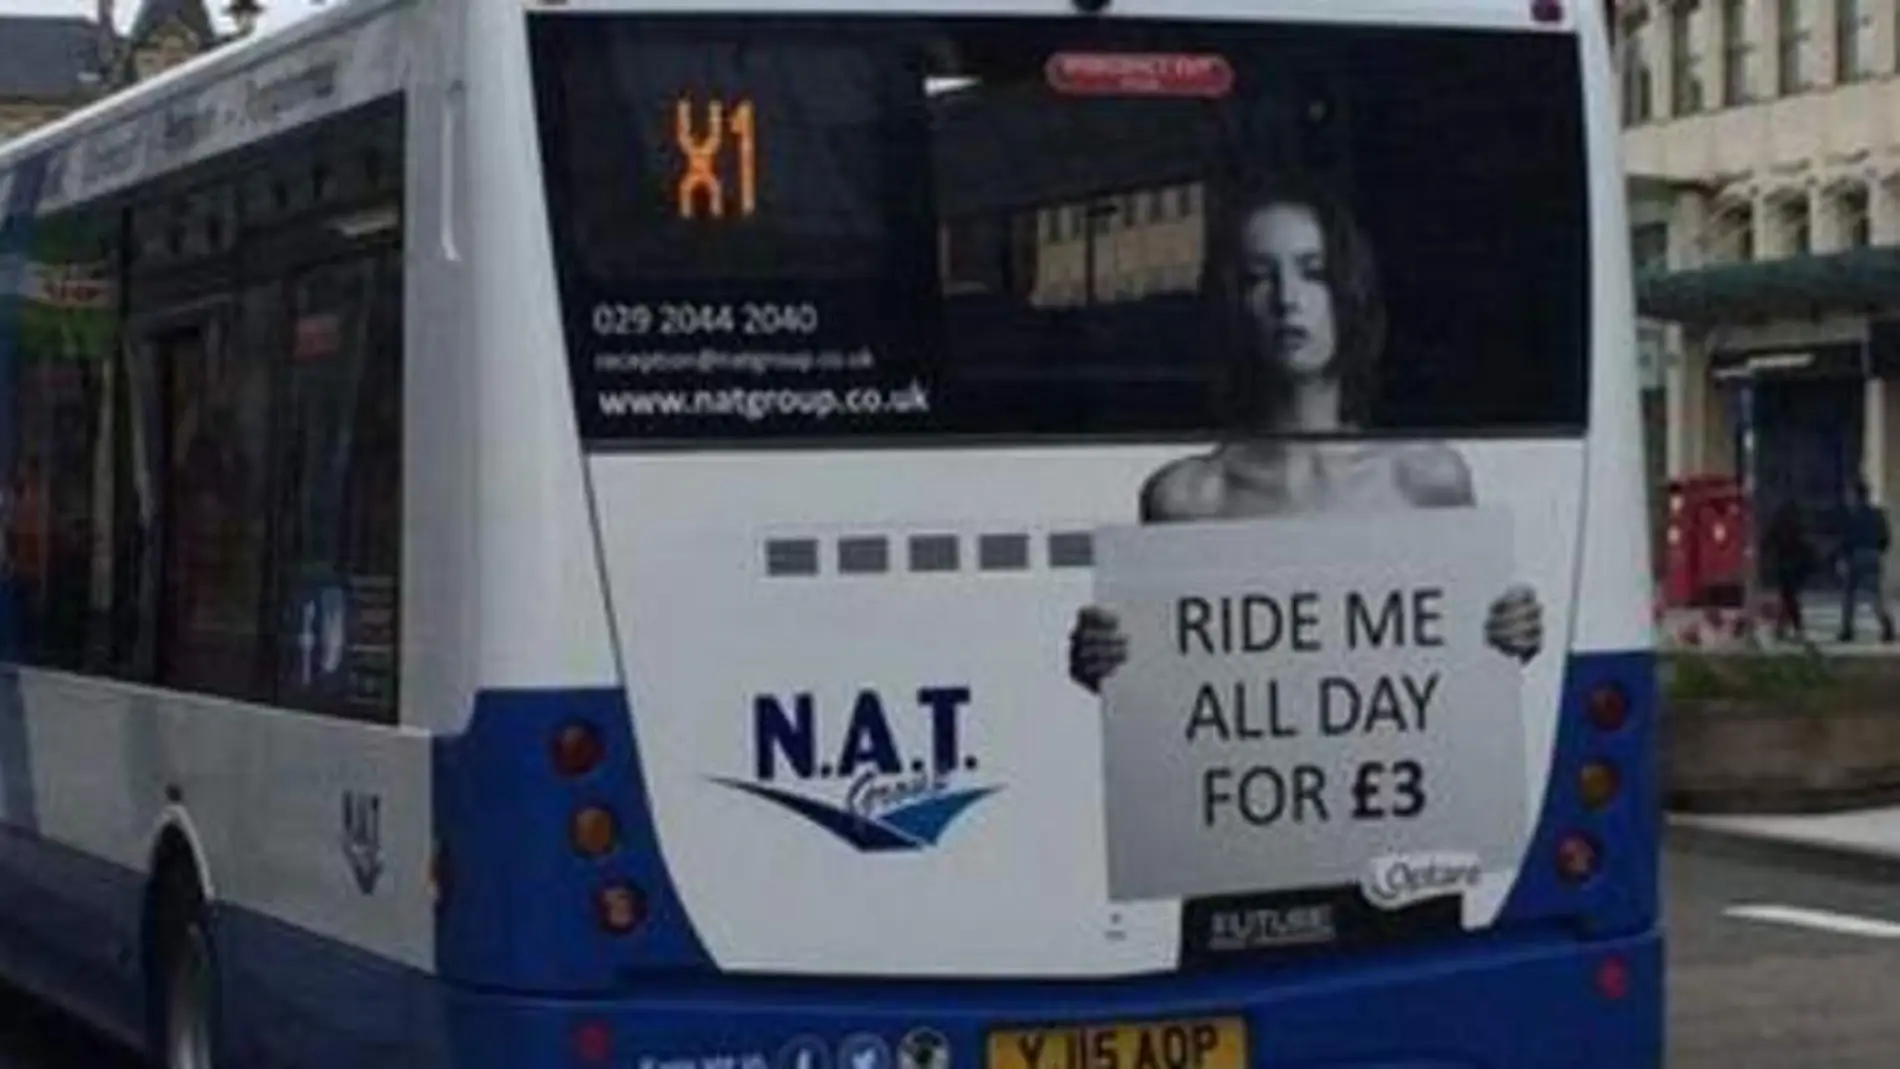 La campaña publicitaria sexista que indigna en Reino Unido